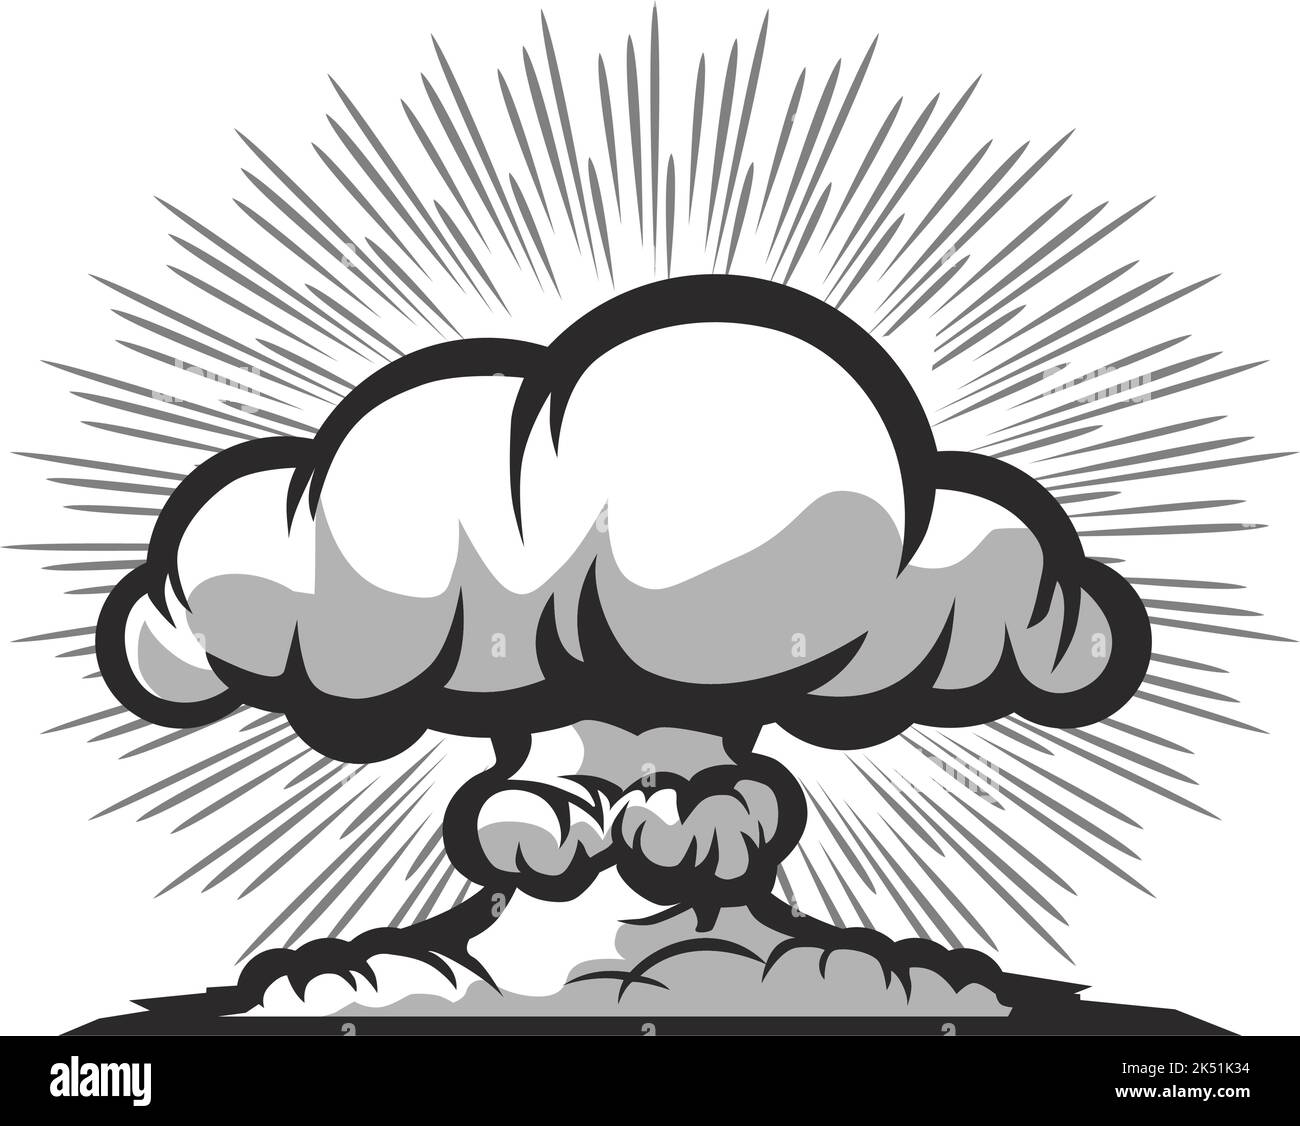 Nuclear explosion mushroom cloud. Vector on transparent backgroun Stock Vector